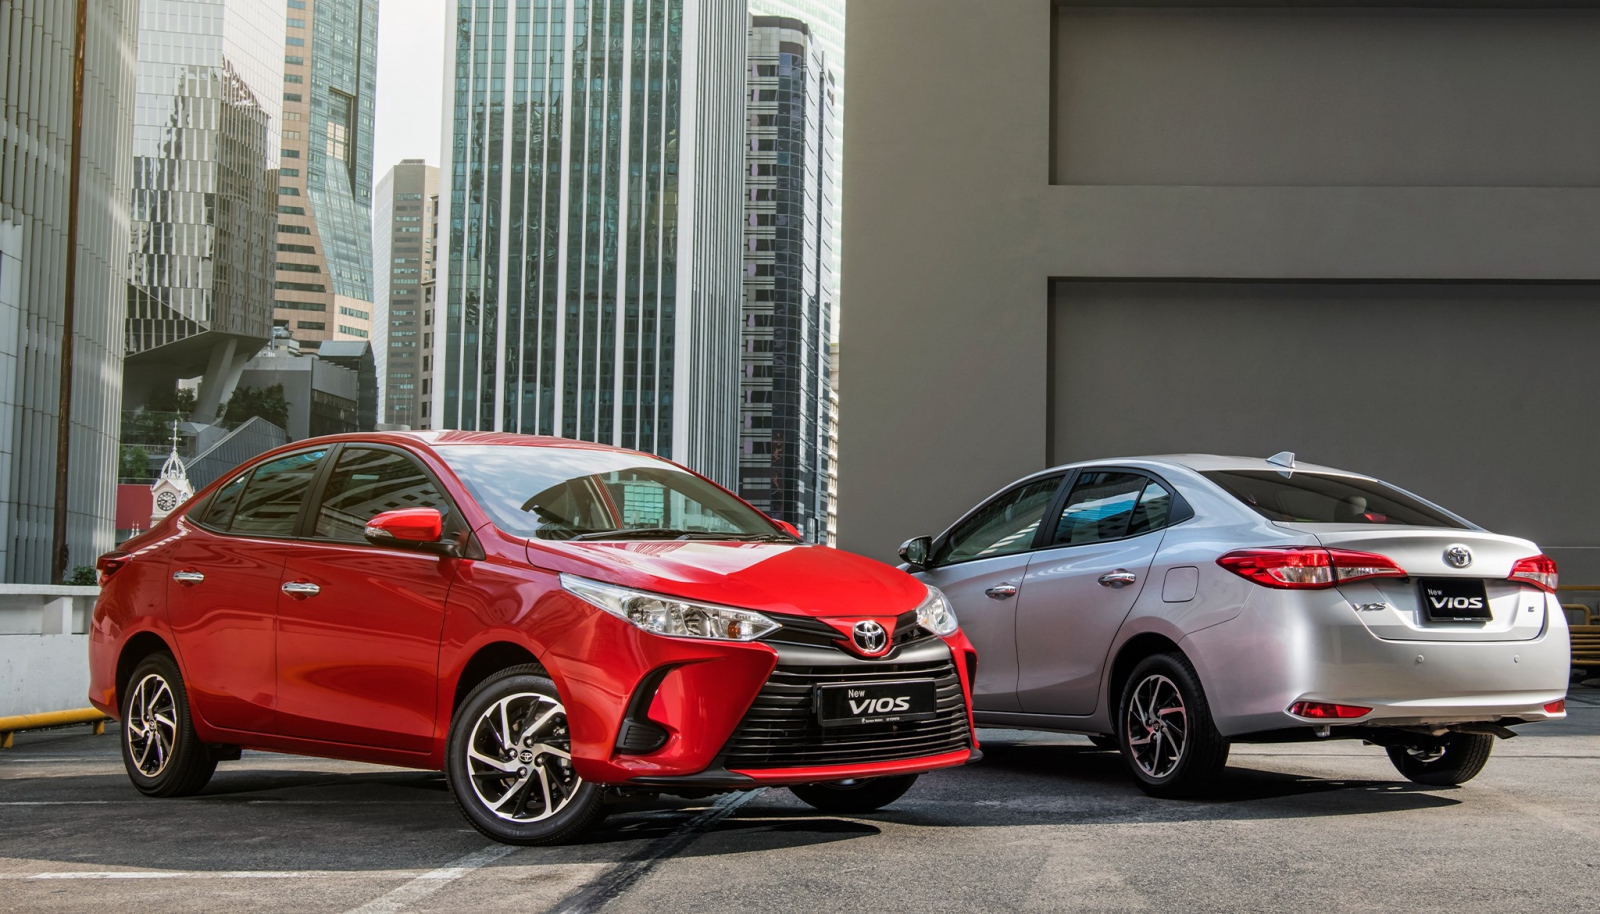 Toyota Vios phân khúc tầm trung phù hợp với tài chính nhiều đối tượng